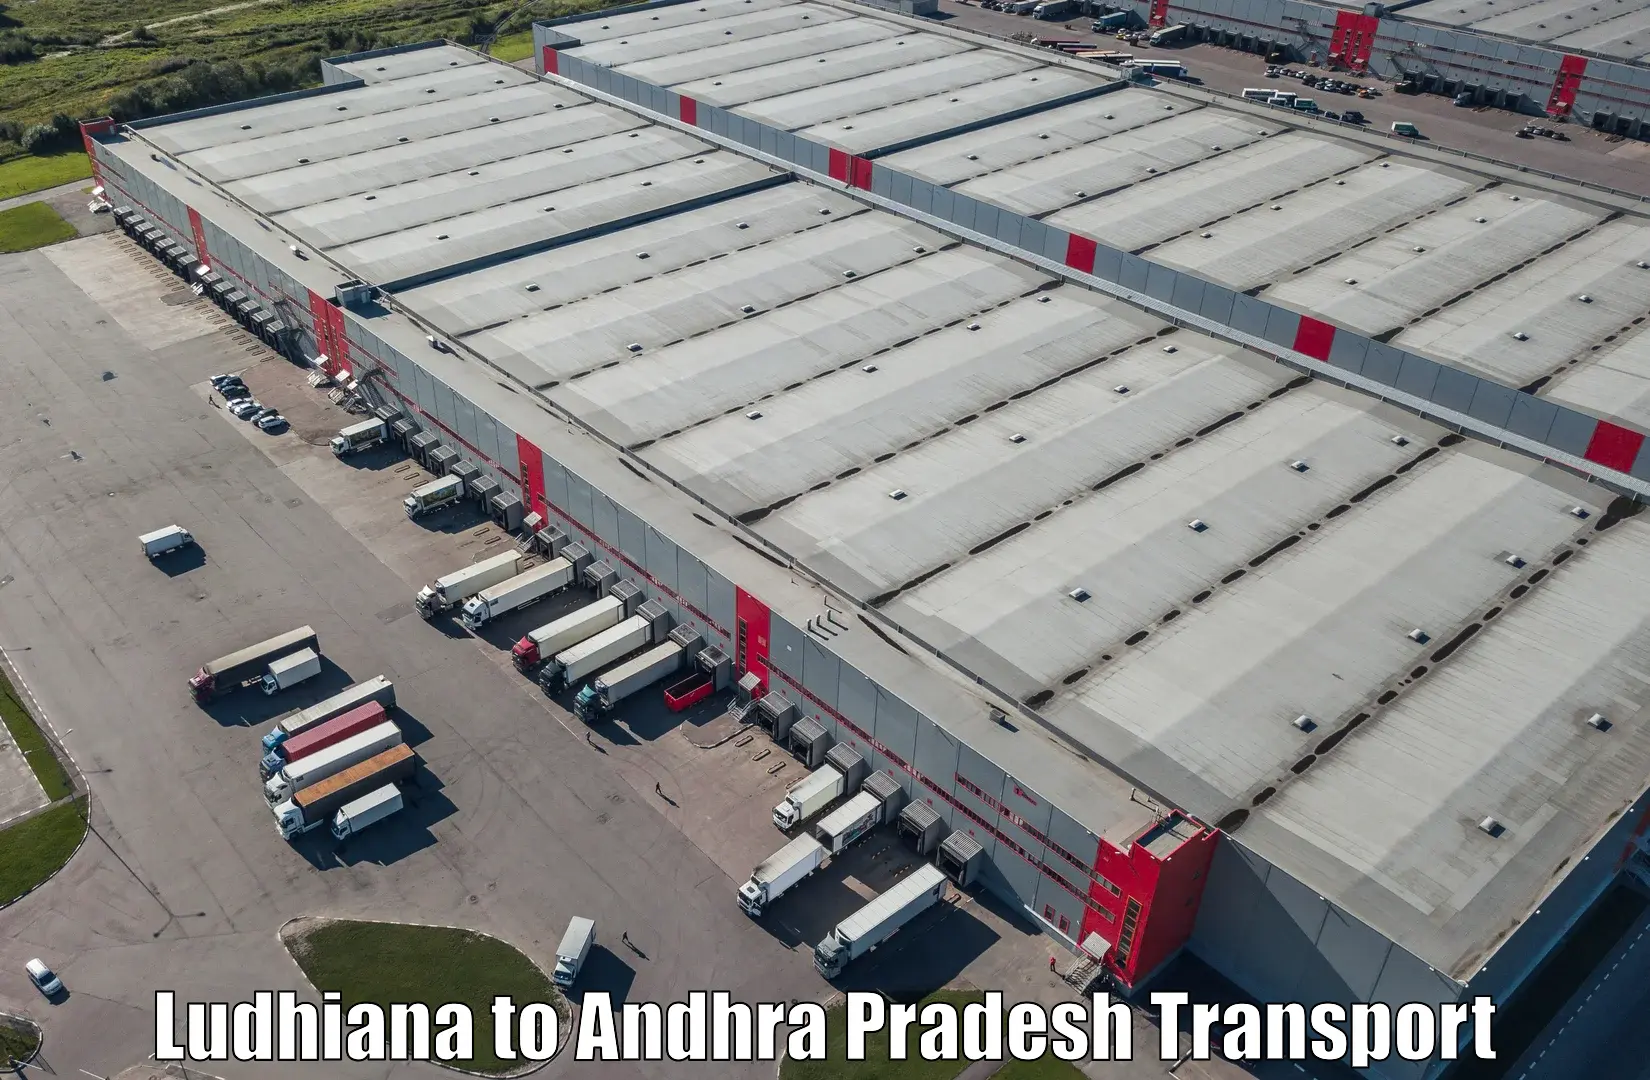 Shipping partner Ludhiana to Kotturu Srikakulam